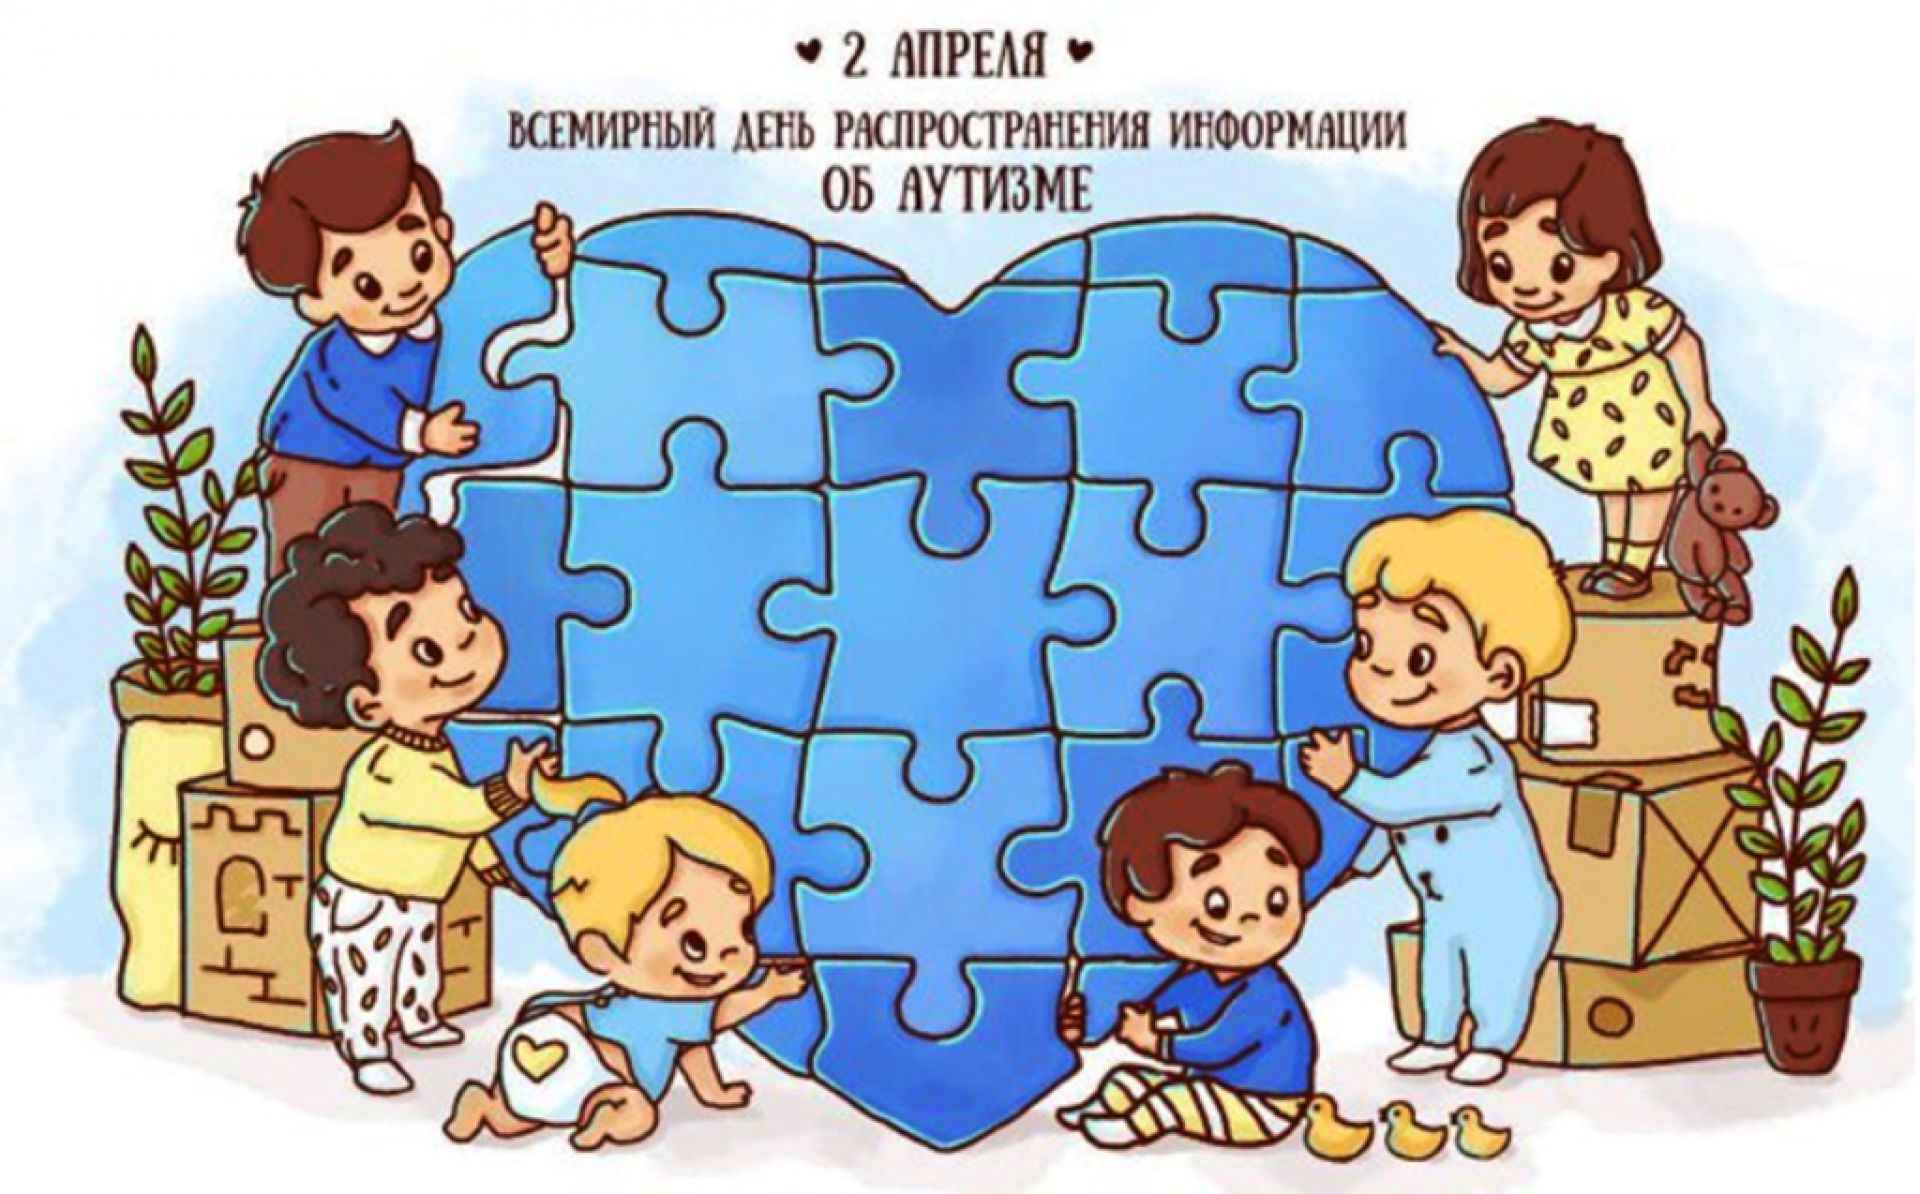 Всемирный день распространения информации об аутизме